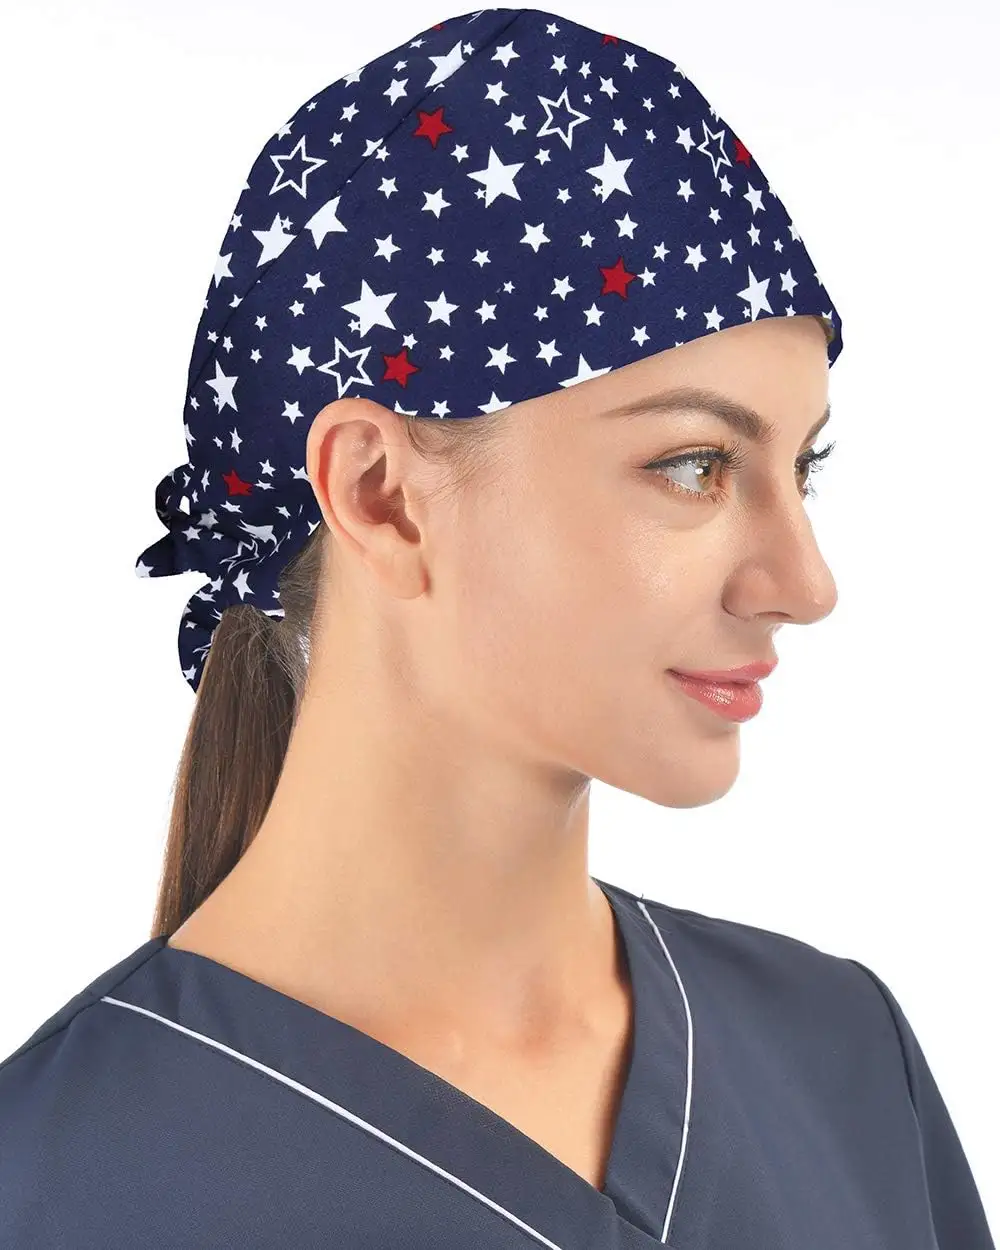 女性のためのスウェットバンド調節可能な帽子付きのワーキングキャップ、長い髪額の汗の便利な吸収